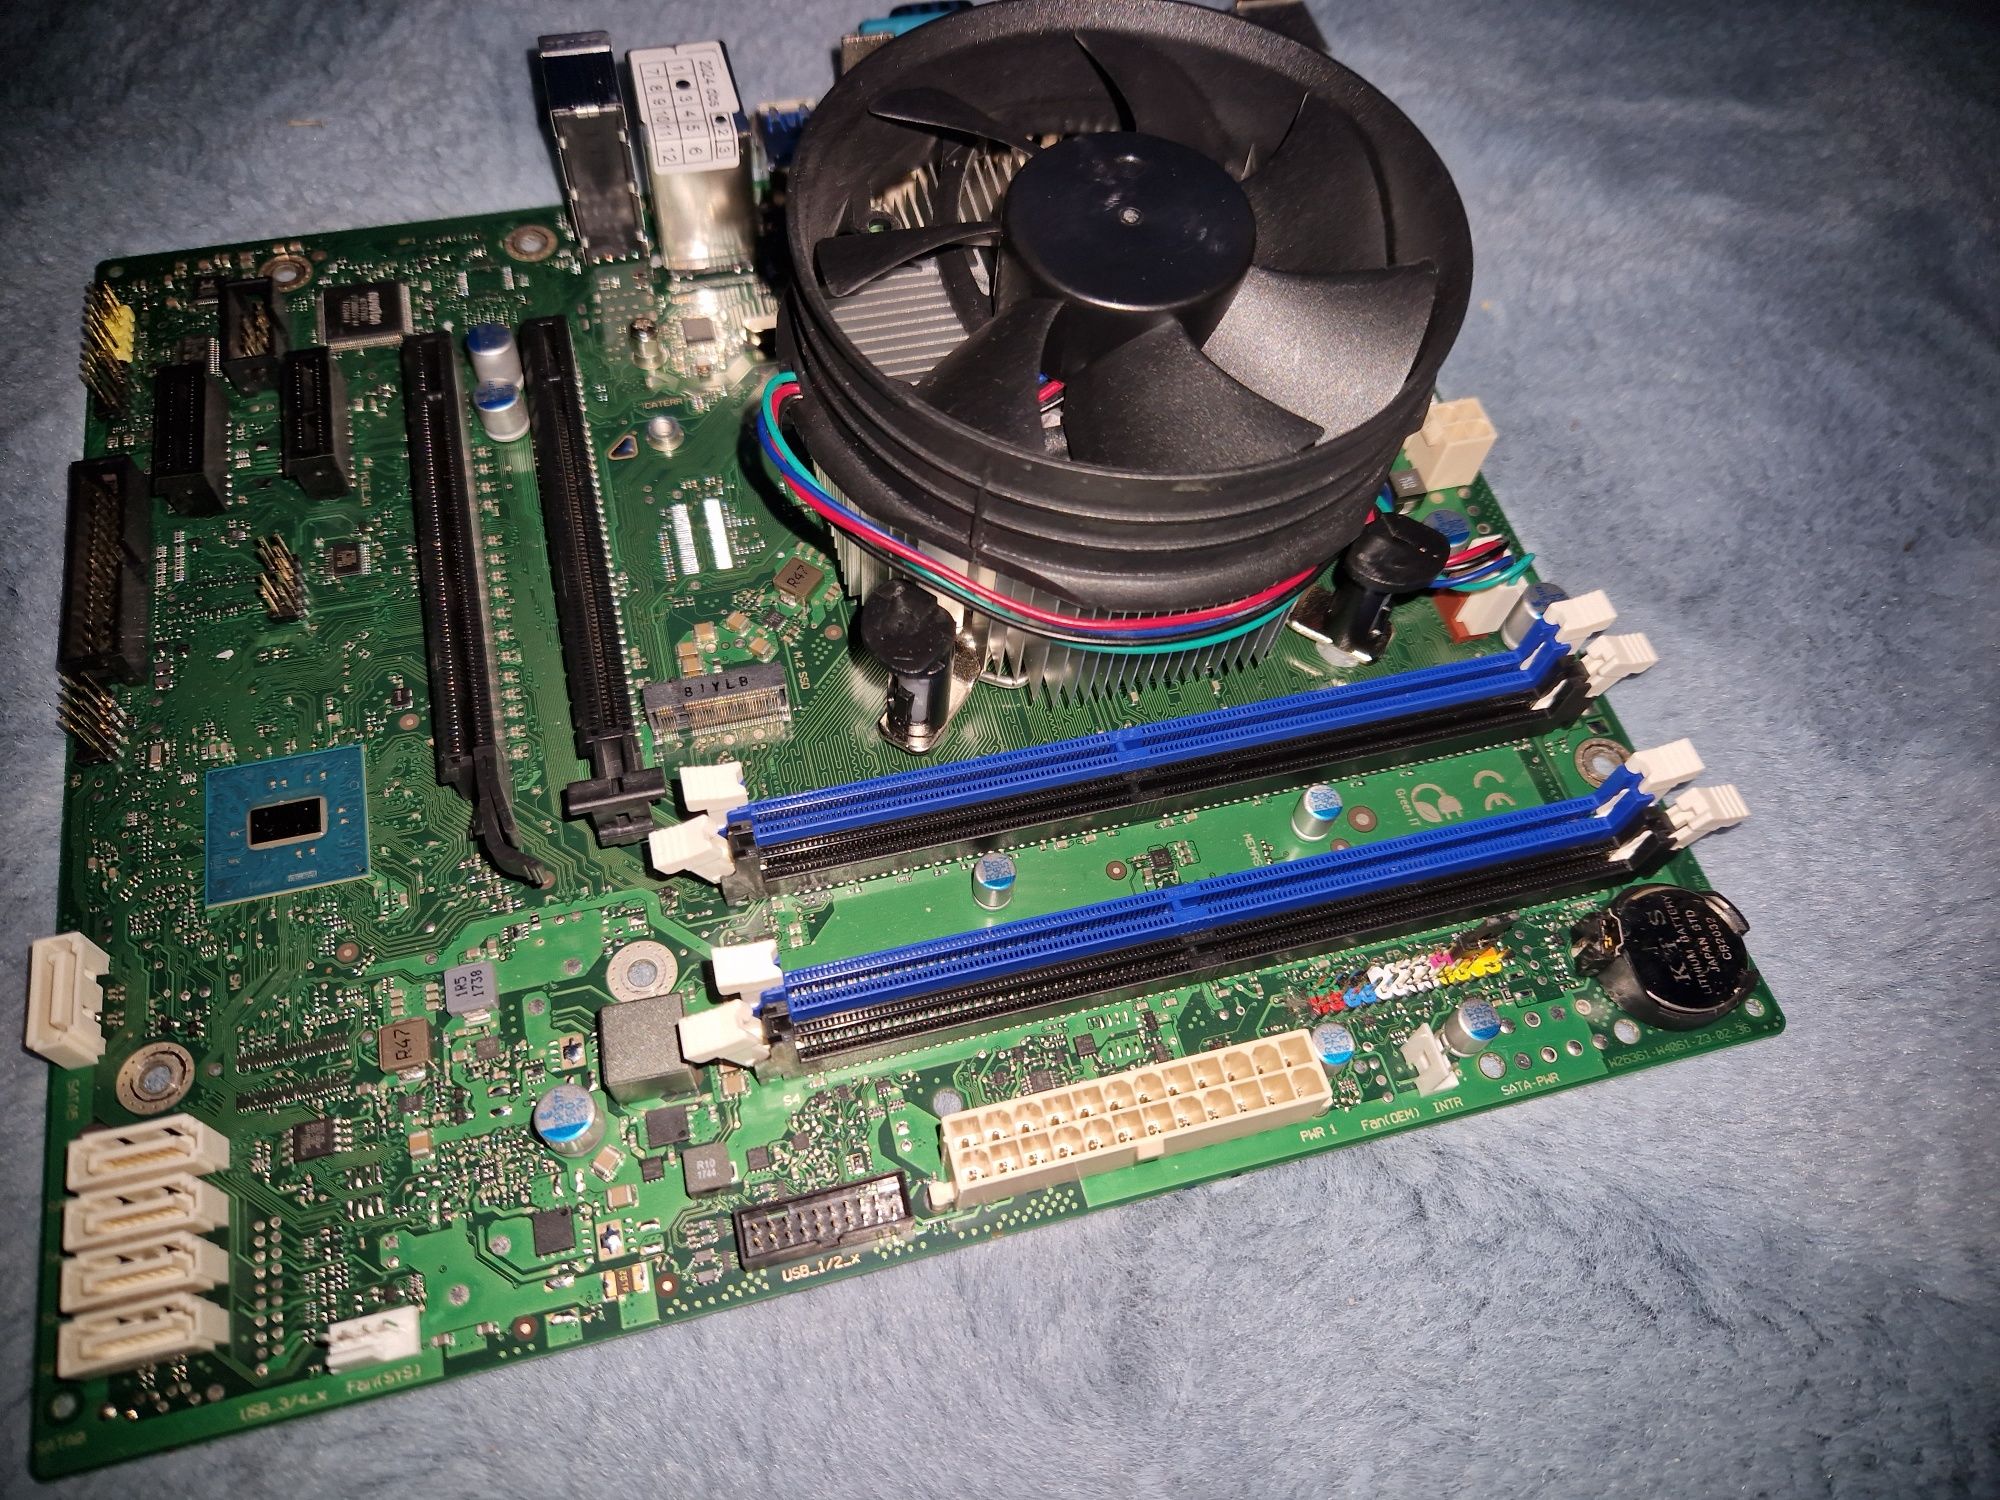 Placa de Baza Fujitsu D3401-B11 GS1, Socket LGA1151